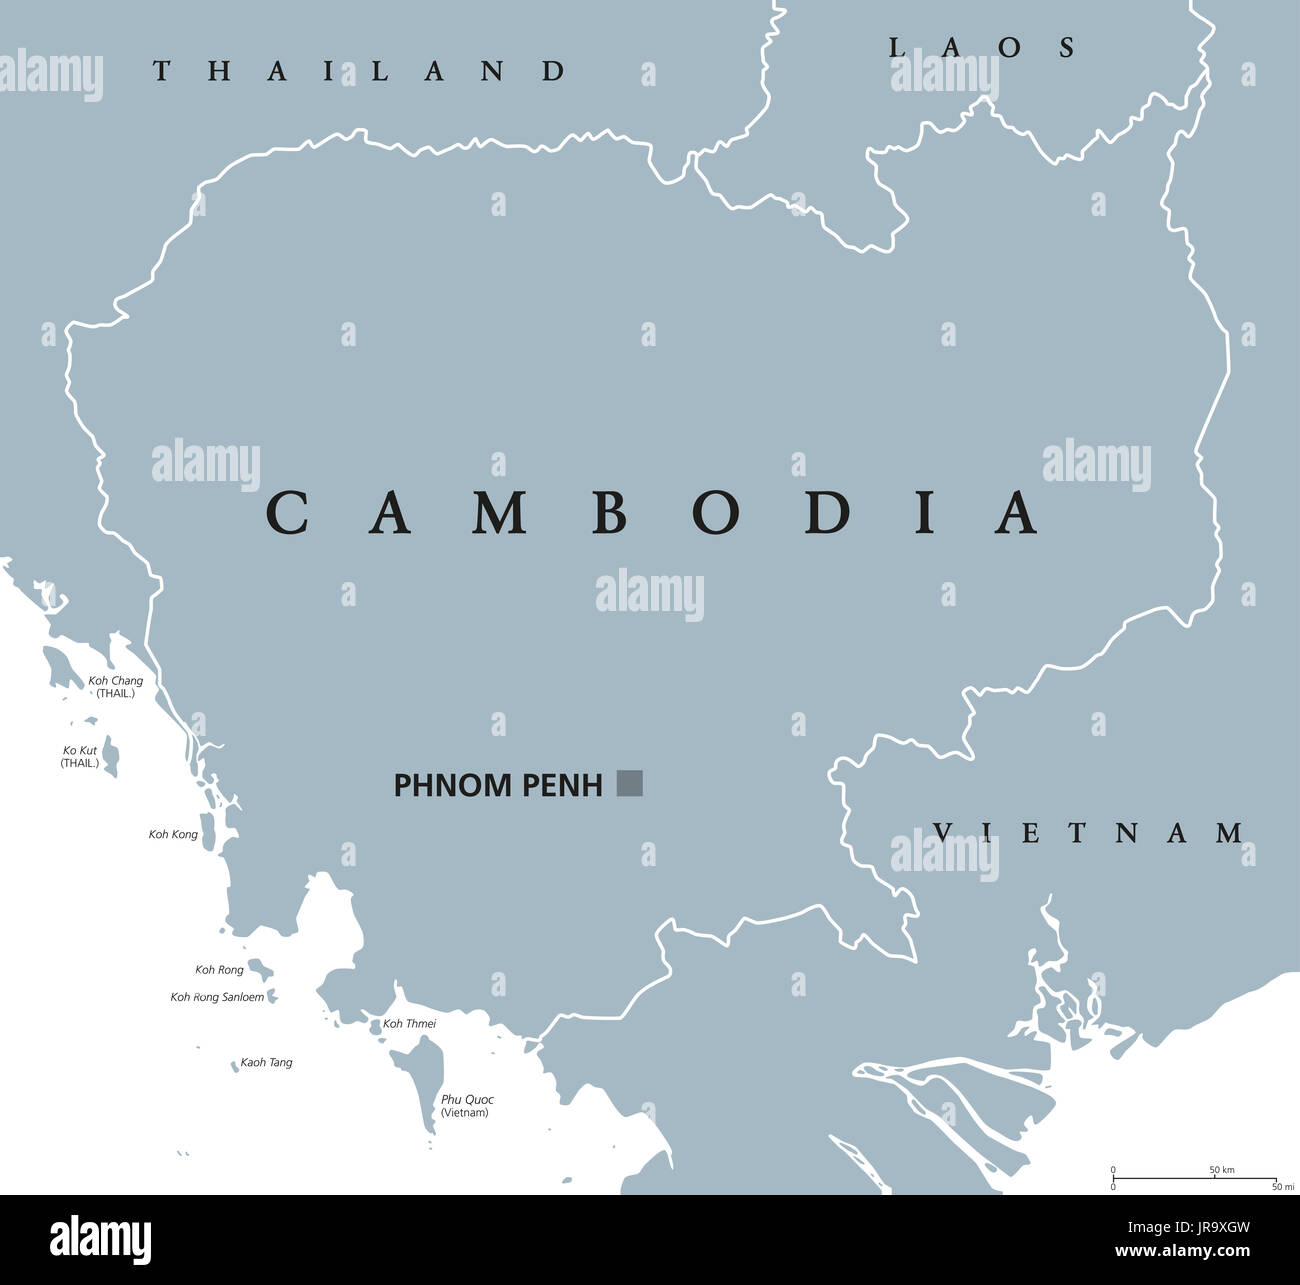 Kambodscha politische Karte mit Hauptstadt Phnom Penh und englische Beschriftung. Kambodscha, ein Königreich und Land in Südostasien. Abbildung. Stockfoto